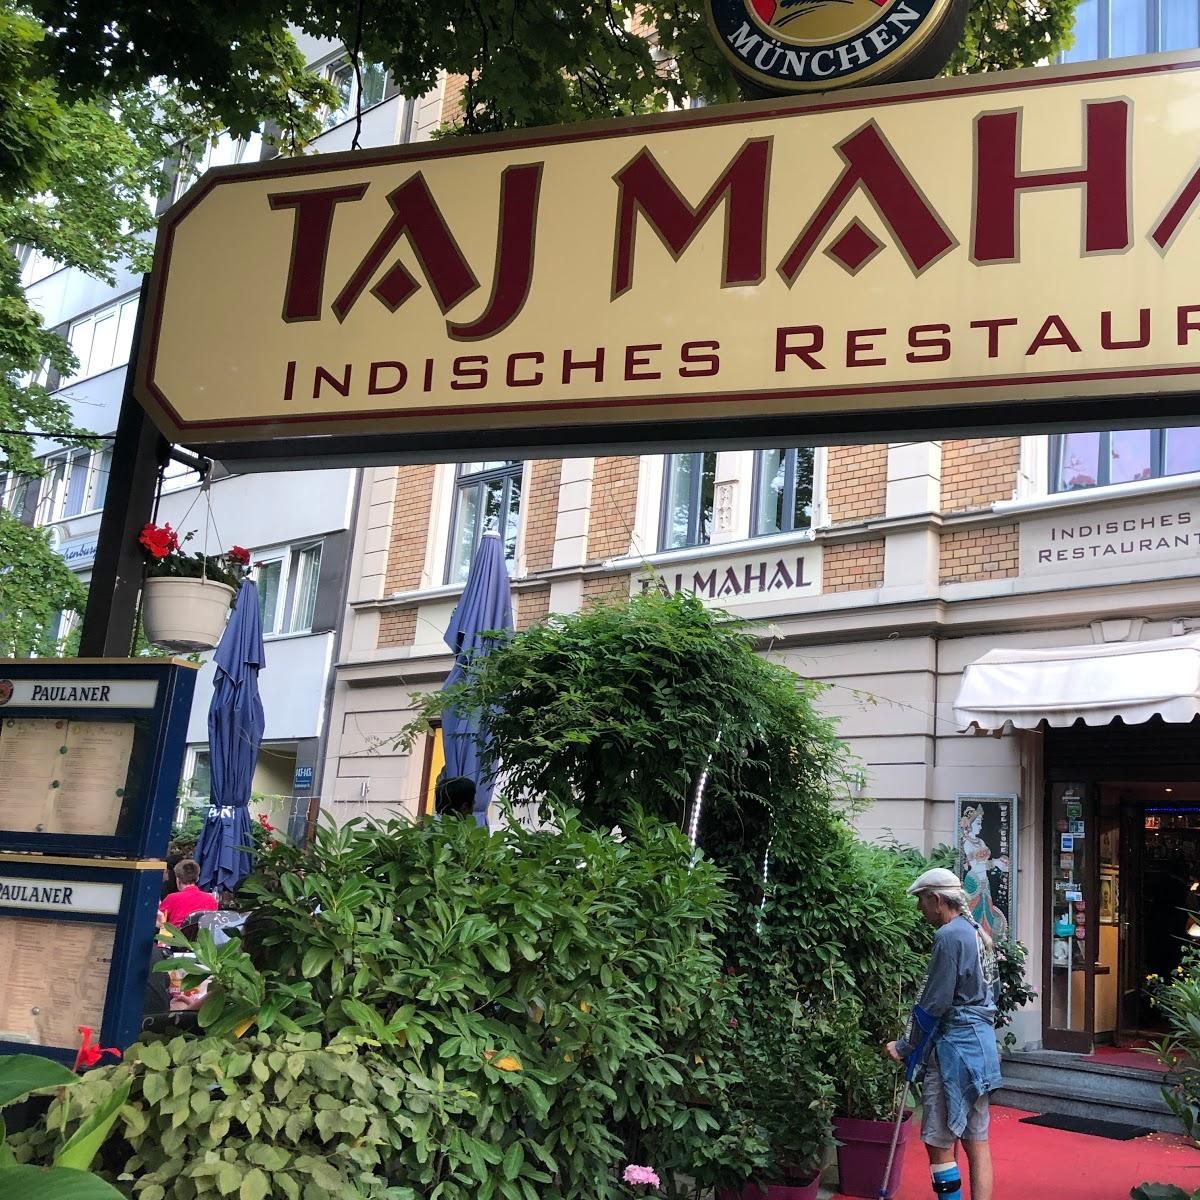 Restaurant "Indisches Restaurant Taj-Mahal" in München